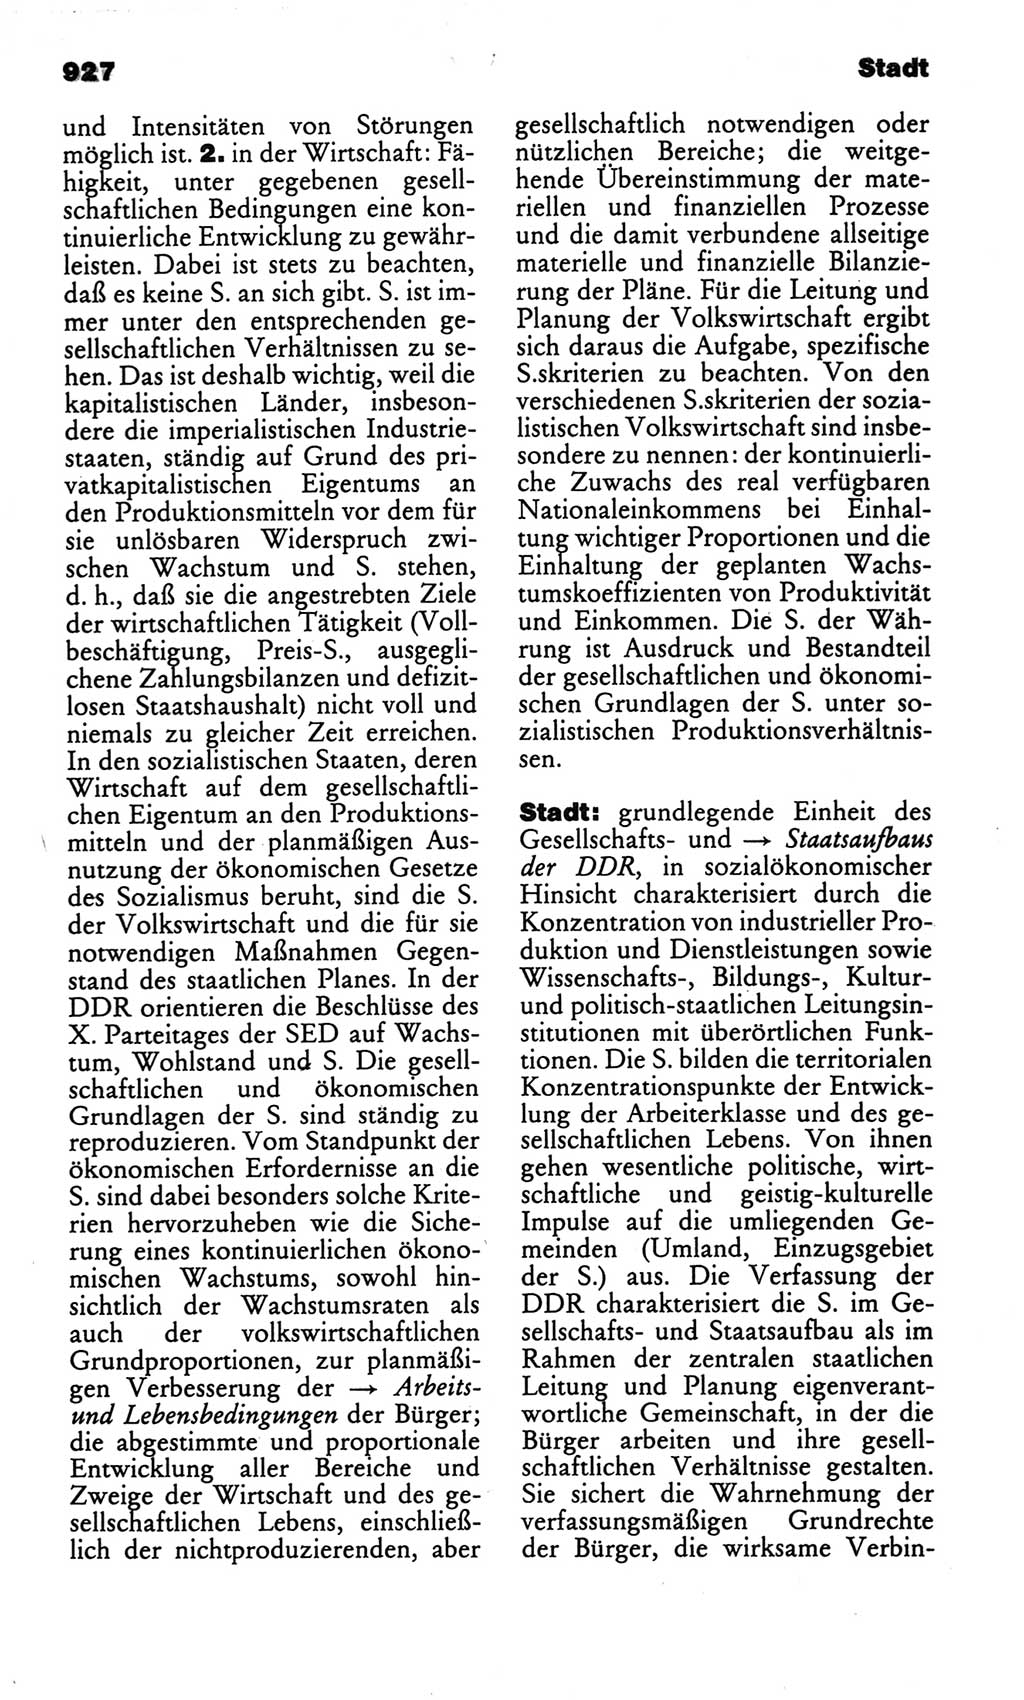 Kleines politisches Wörterbuch [Deutsche Demokratische Republik (DDR)] 1986, Seite 927 (Kl. pol. Wb. DDR 1986, S. 927)